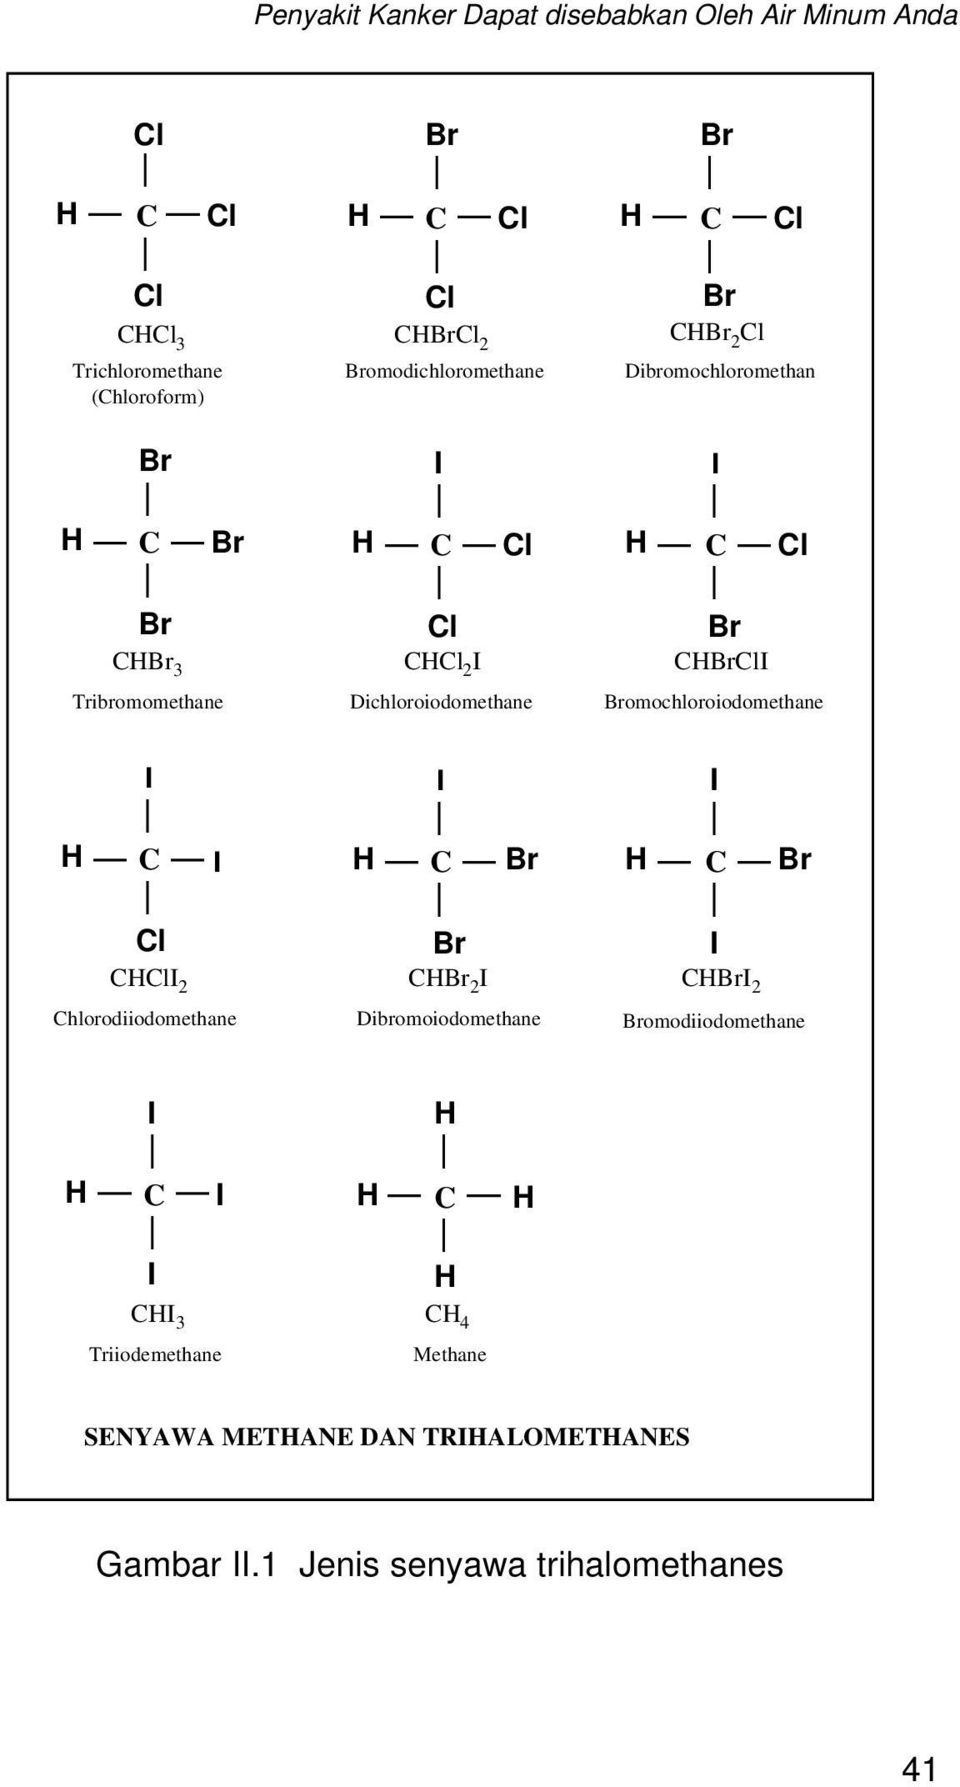 omochloroiodomethane C C C C 2 Chlorodiiodomethane C 2 Dibromoiodomethane C 2 omodiiodomethane C C